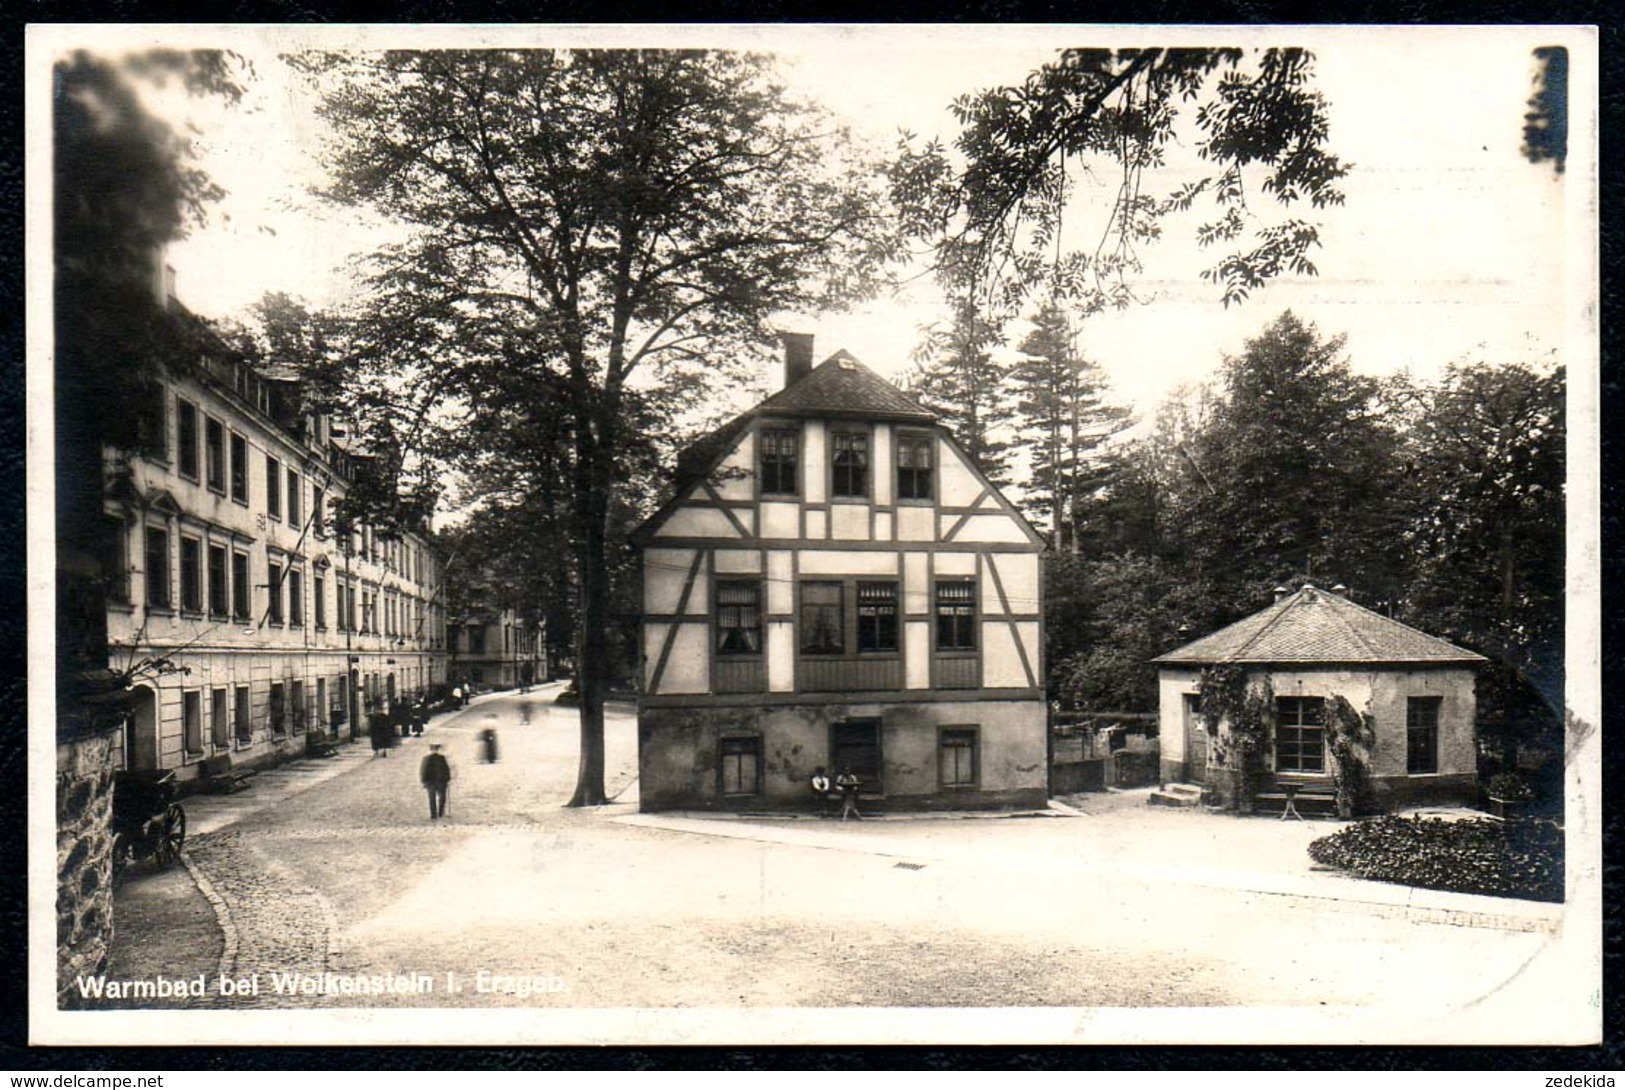 B2075 - Warmbad Bei Wolkenstein - Franz Landgraf - Hermann Uhlig - Sonderstempel Gel 1922 - Wolkenstein